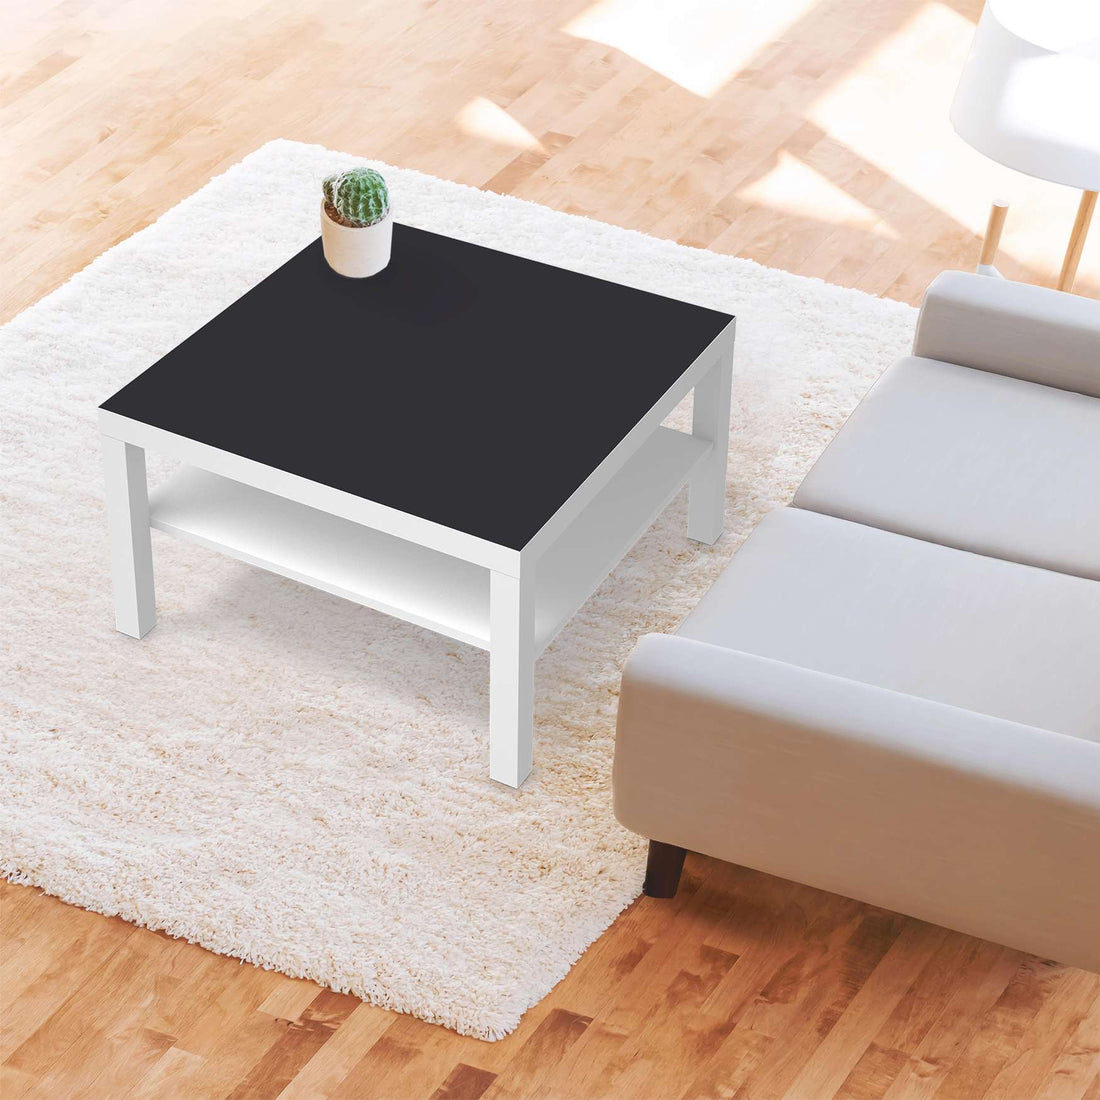 Selbstklebende Folie Grau Dark - IKEA Lack Tisch 78x78 cm - Wohnzimmer